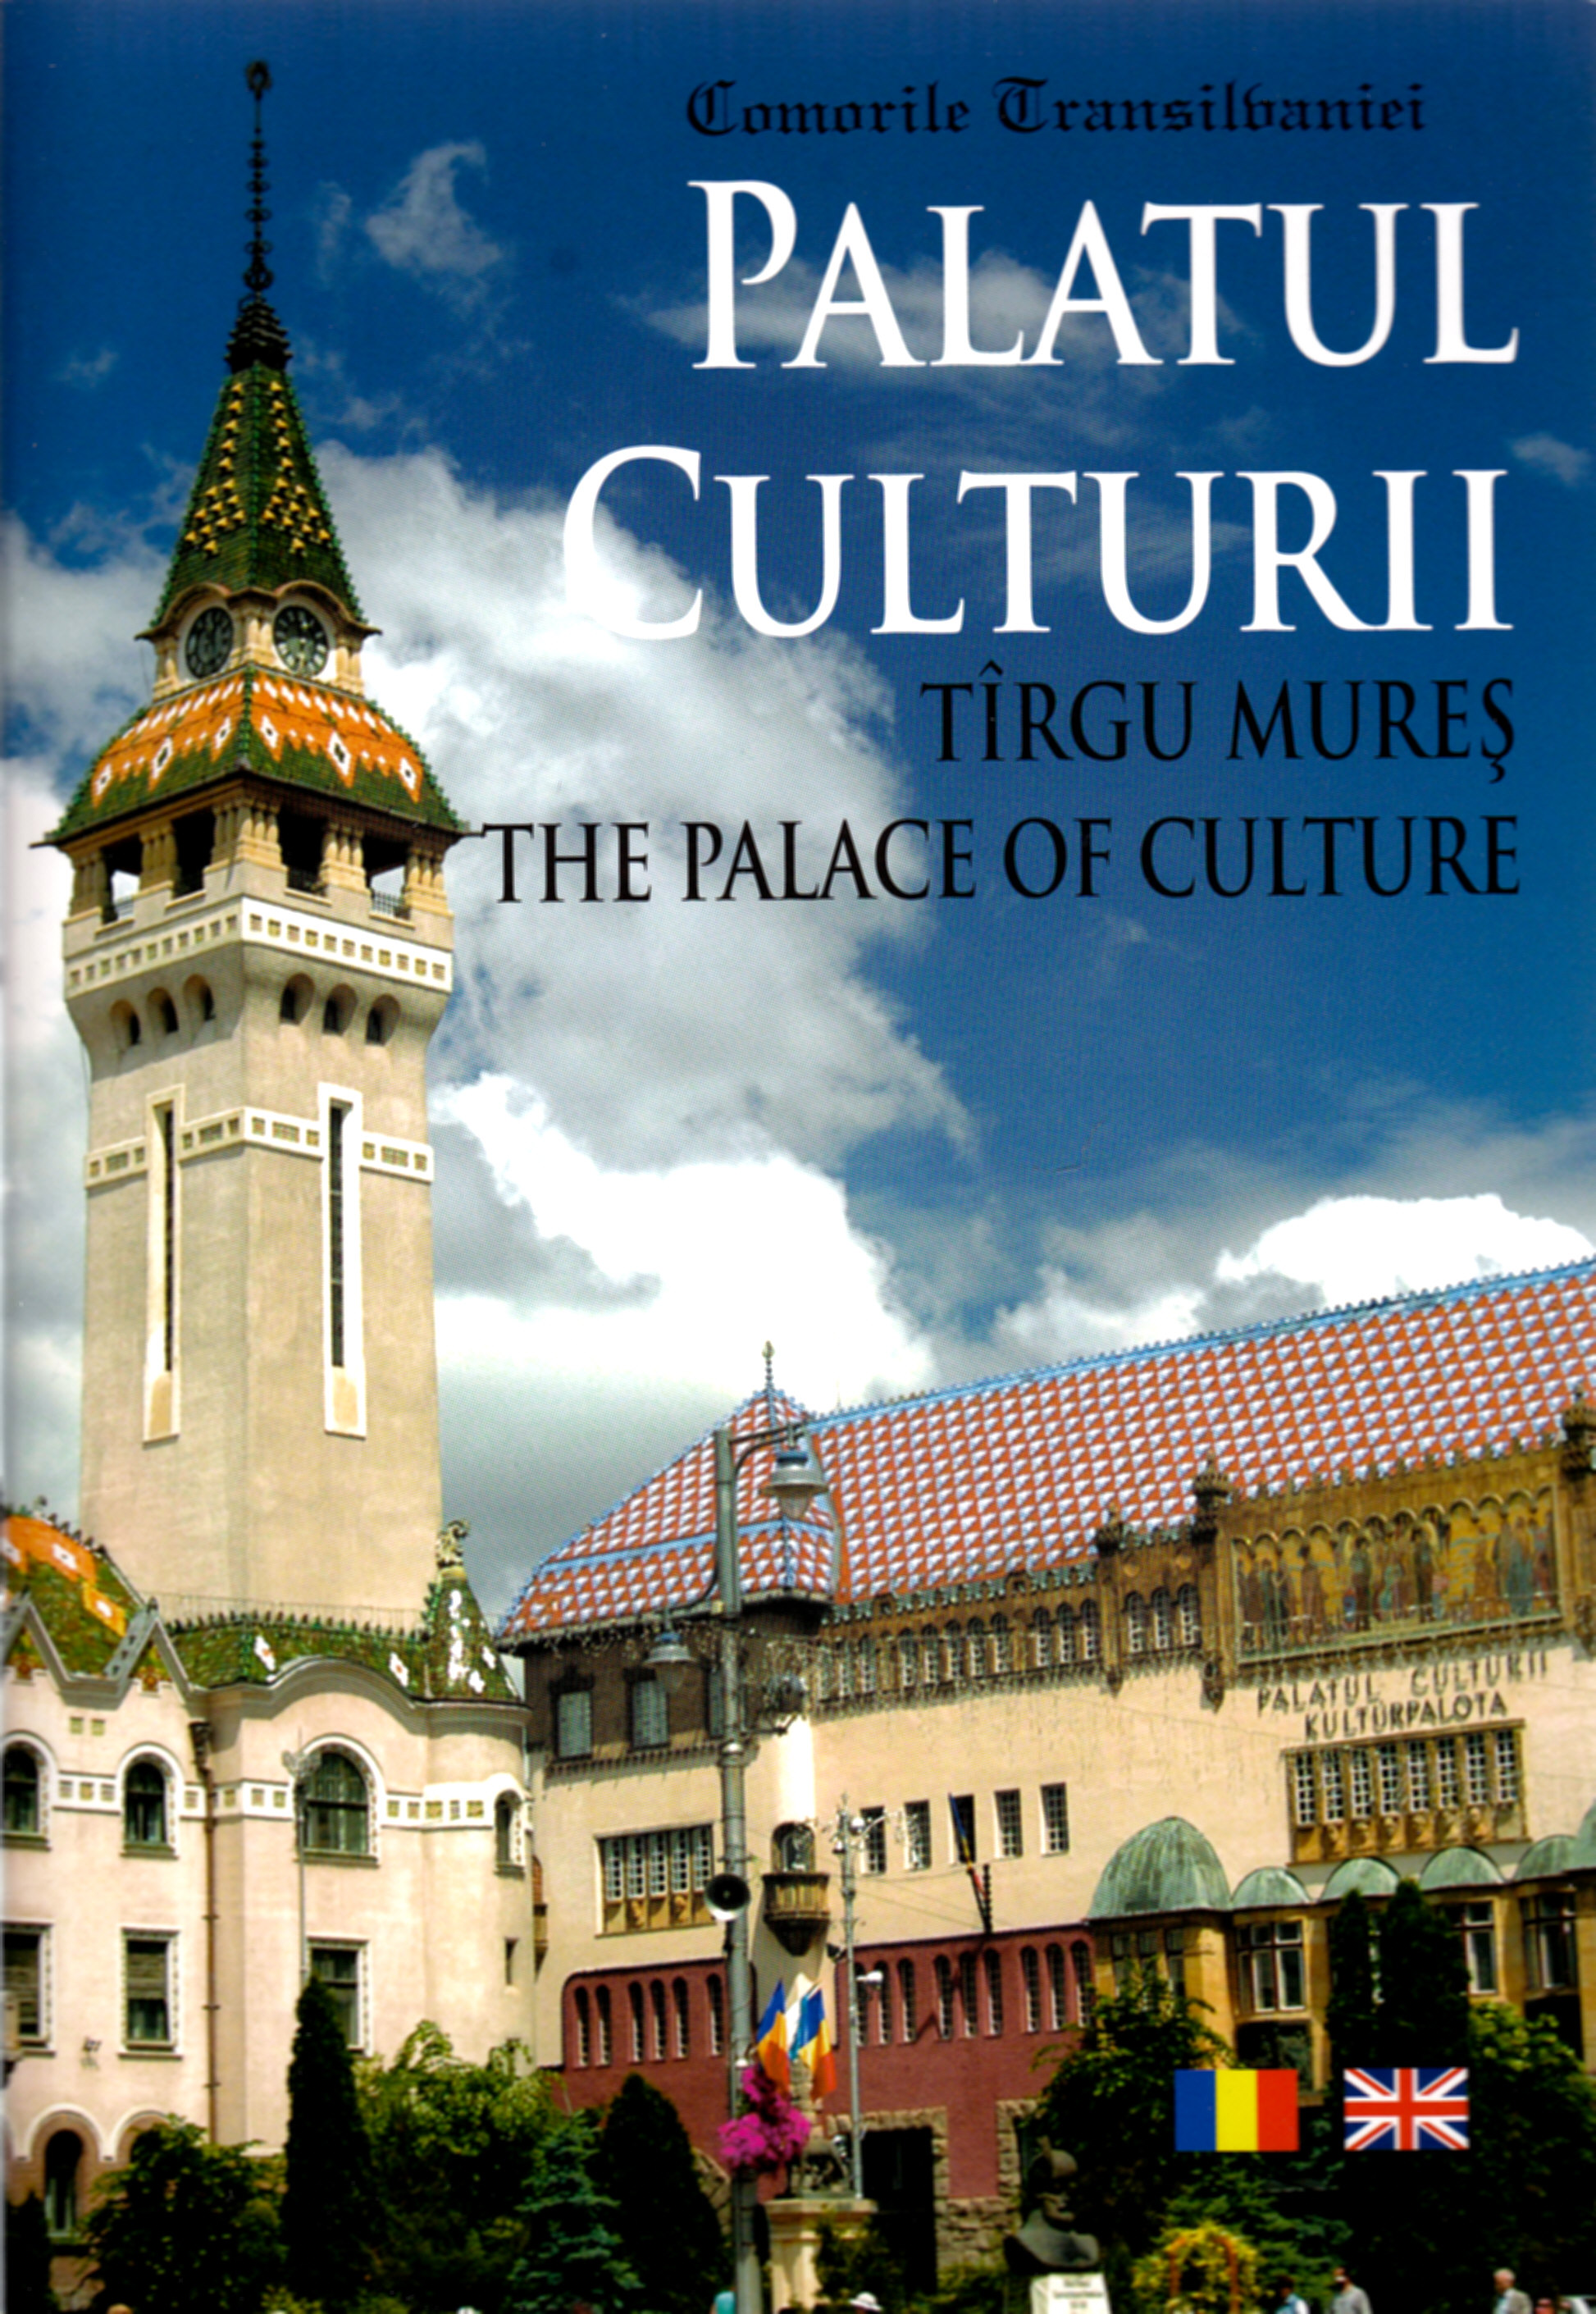 Palatul culturii - Targu Mures - Romghid